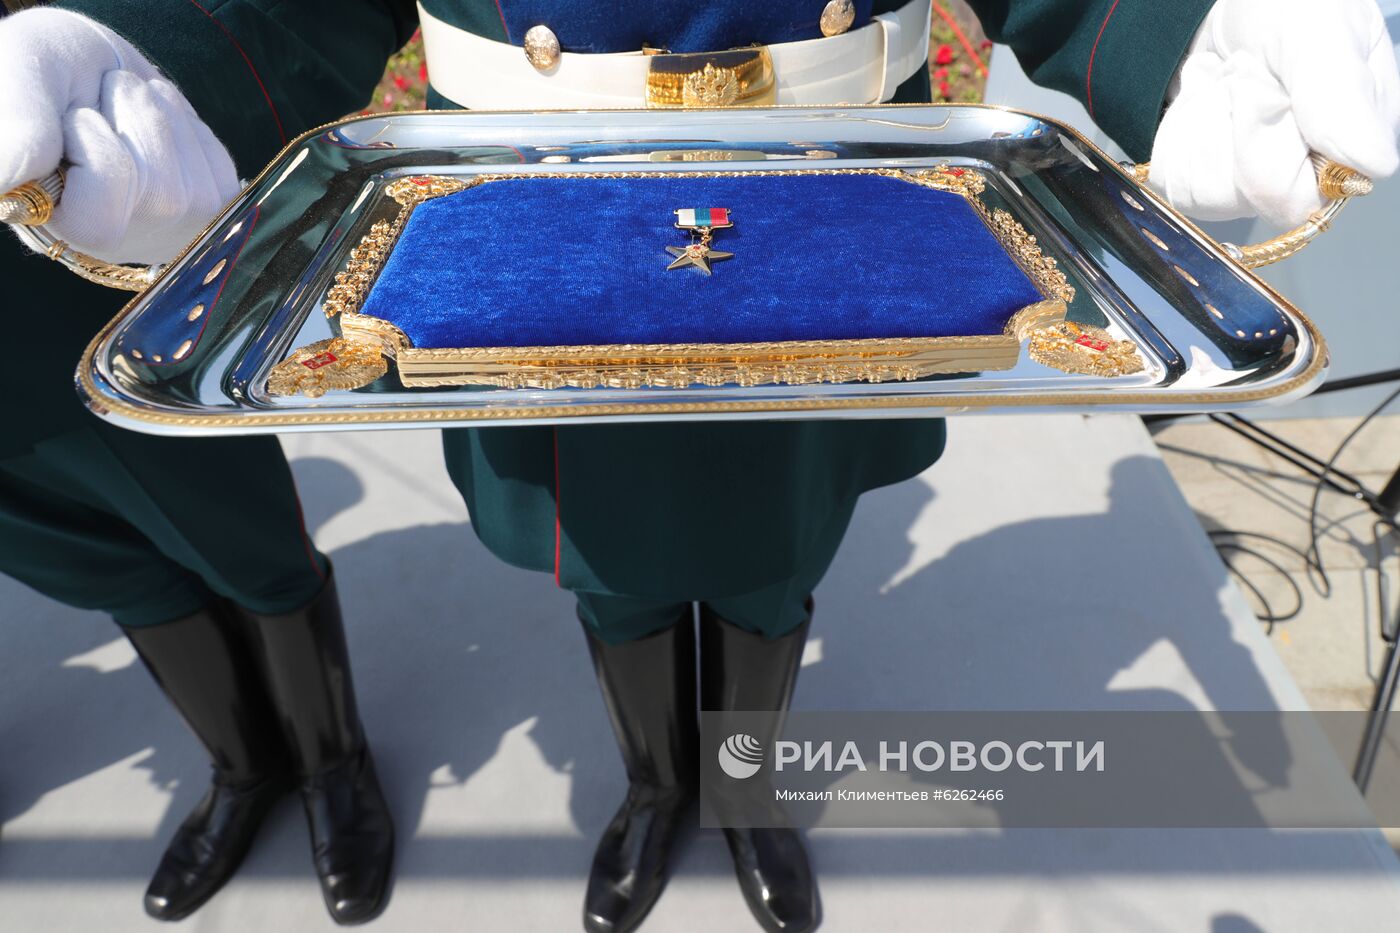 Президент РФ В. Путин вручил золотые звезды Героям Труда на Поклонной горе